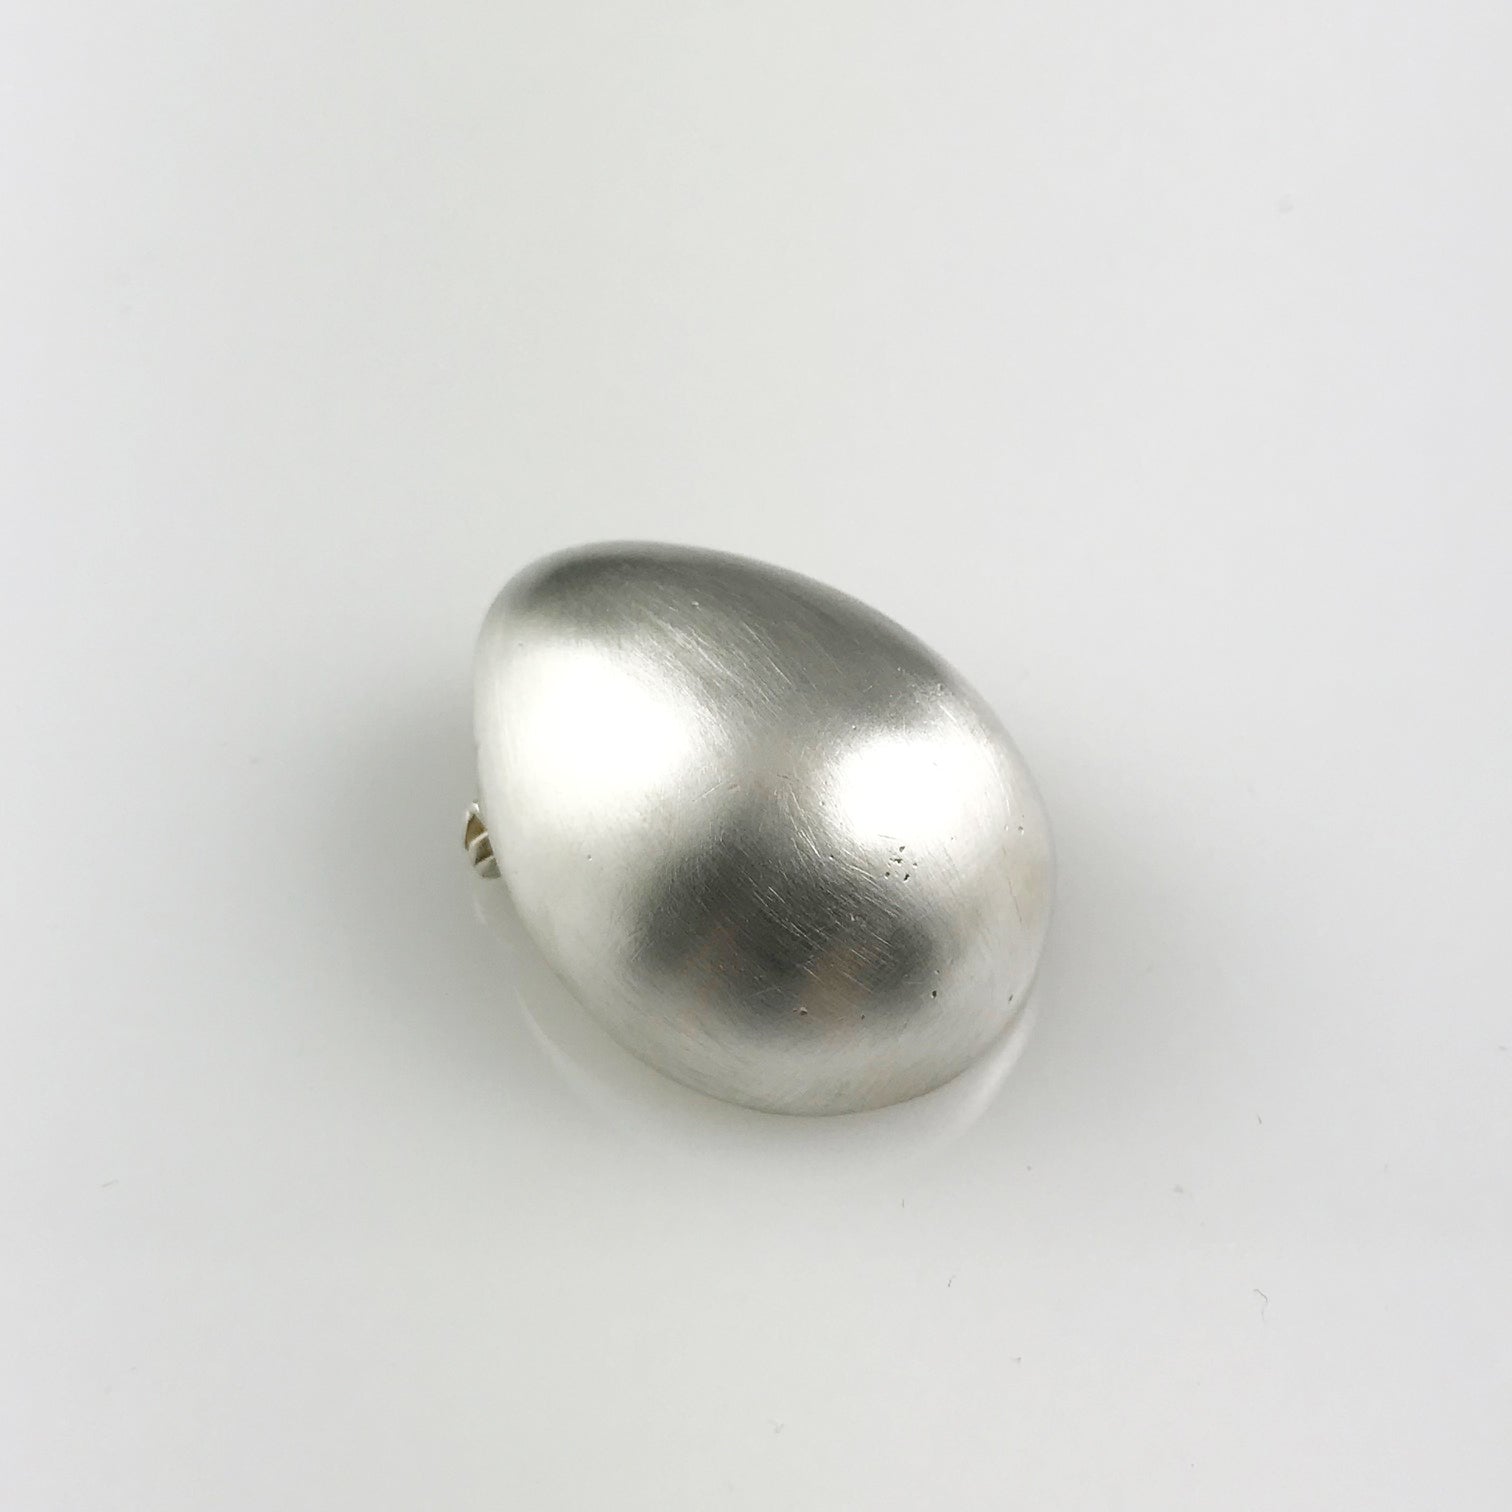 Silver egg brooch